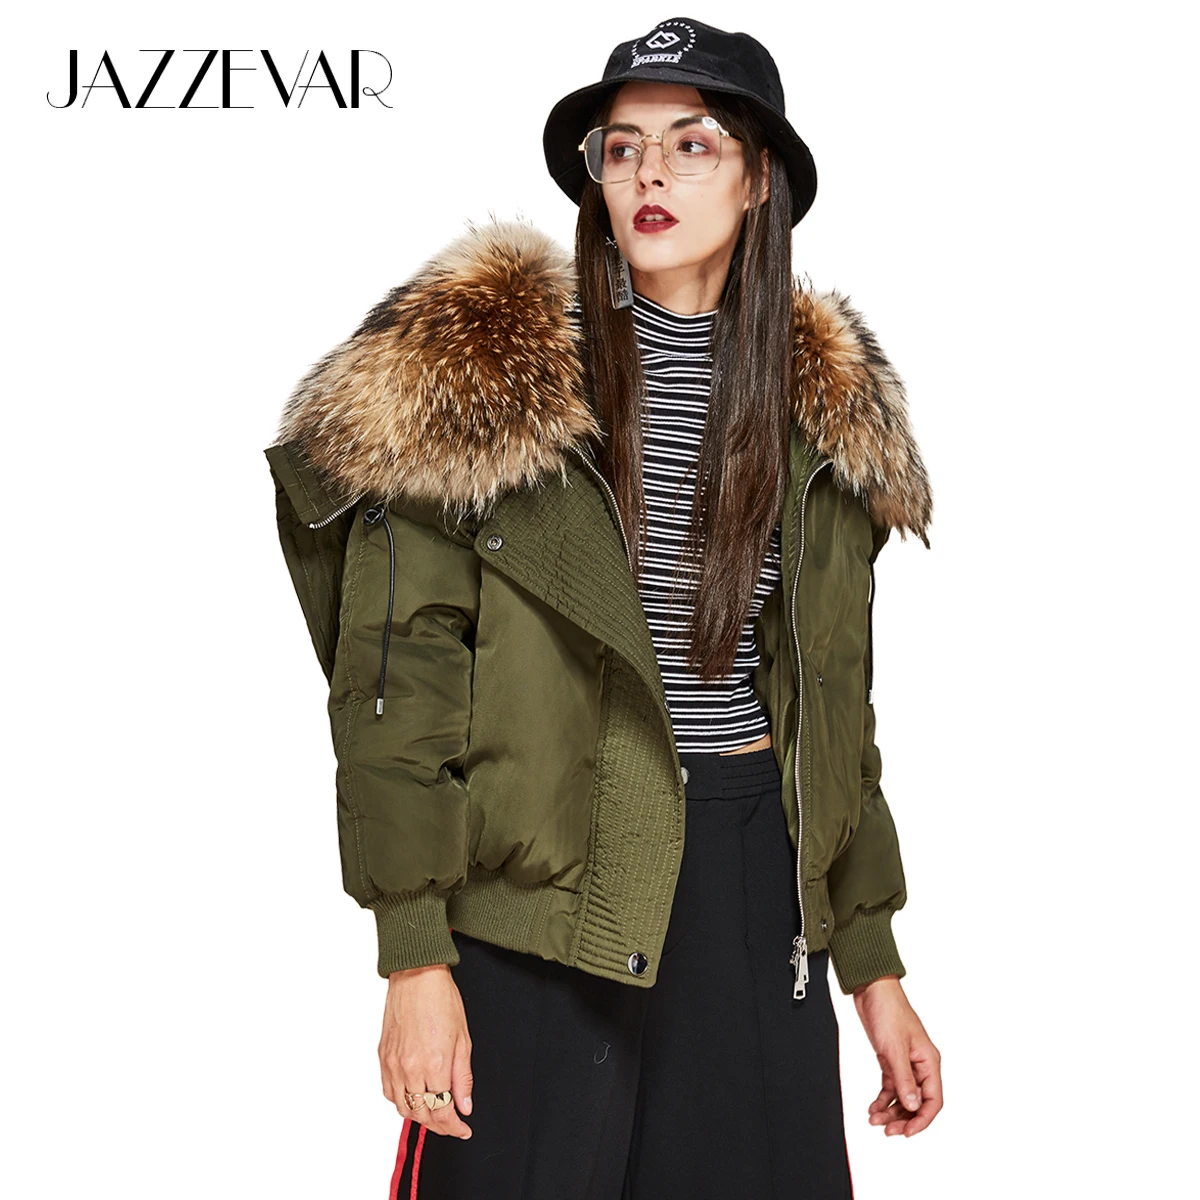 Aliexpress.com : Buy JAZZEVAR New Winter High Fashion street Trendy